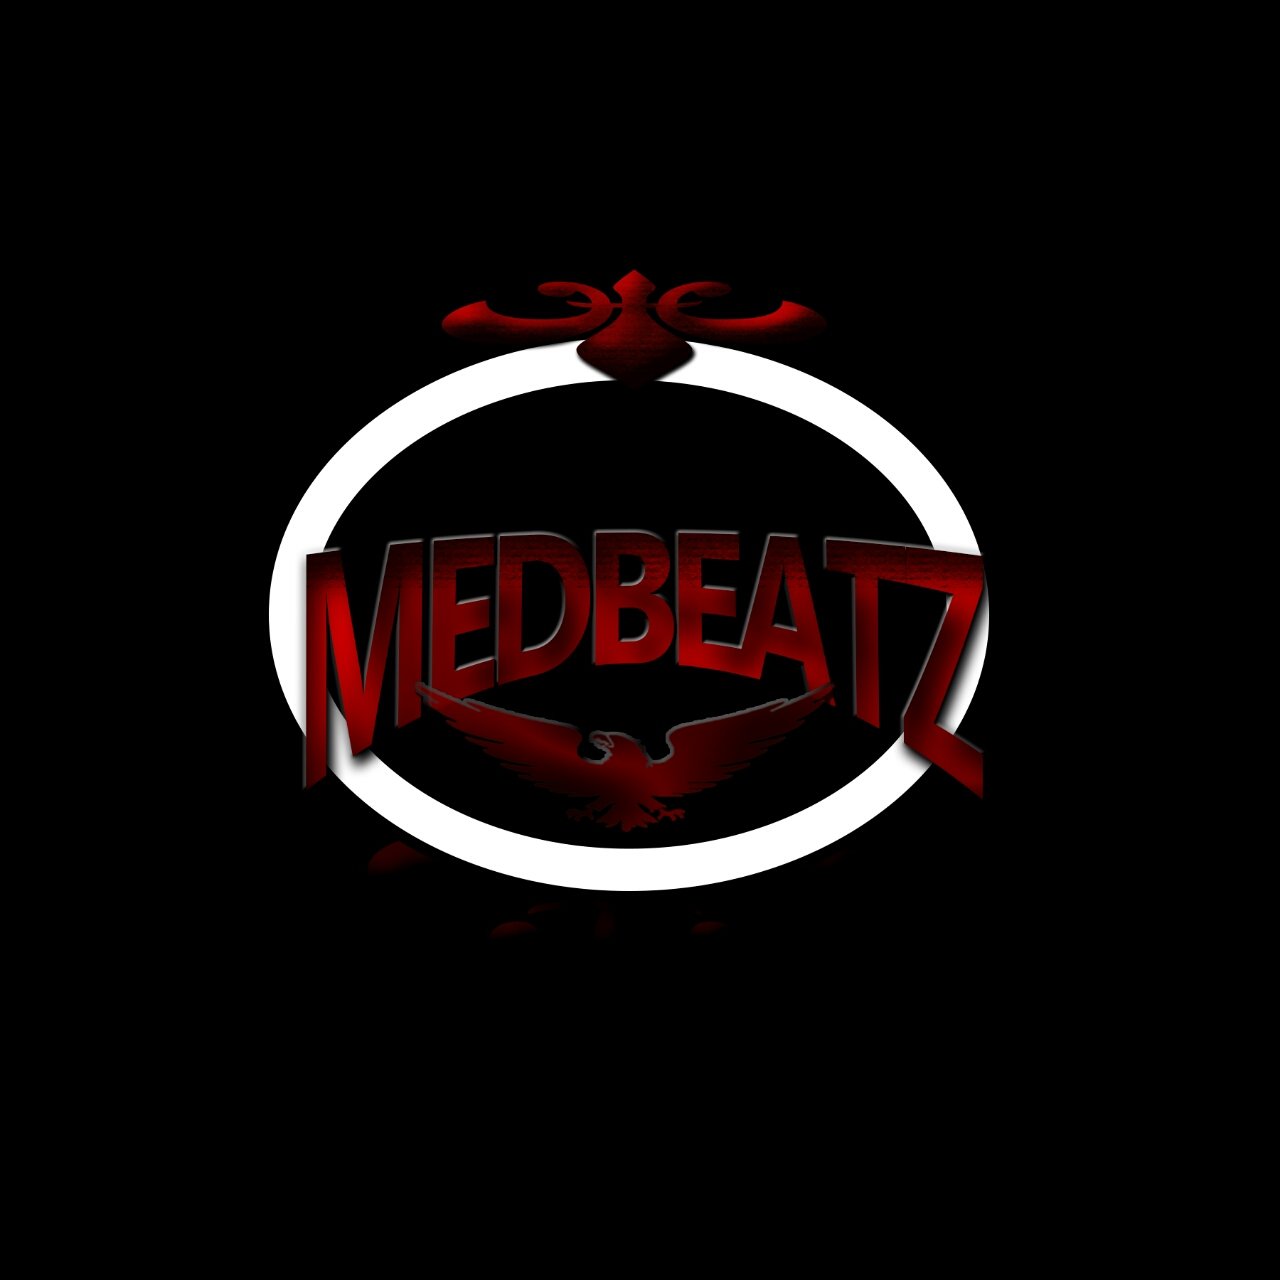 BeatMakers at MEDBEATZ,We do all commercial Trap,R&B,EDM&Trance,For Beats inquiries contact +27635538178,(medbeatzmusik@gmail.com)